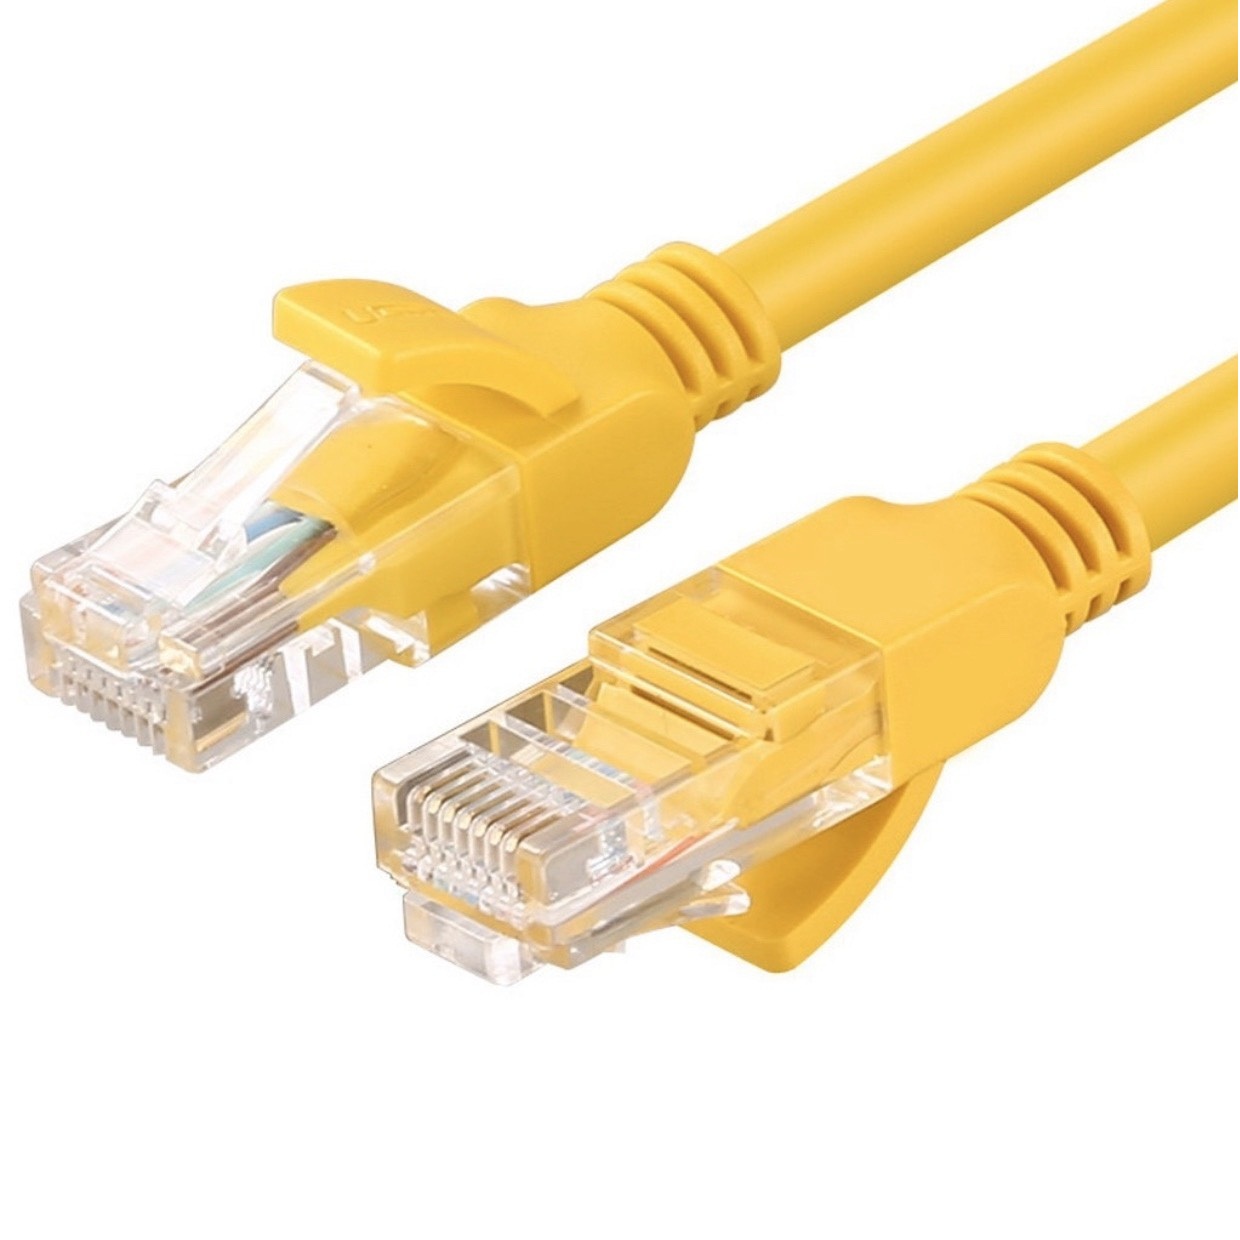 Cáp mạng internet/mạng LAN Cat 6E 3m 2 đầu bấm sẵn